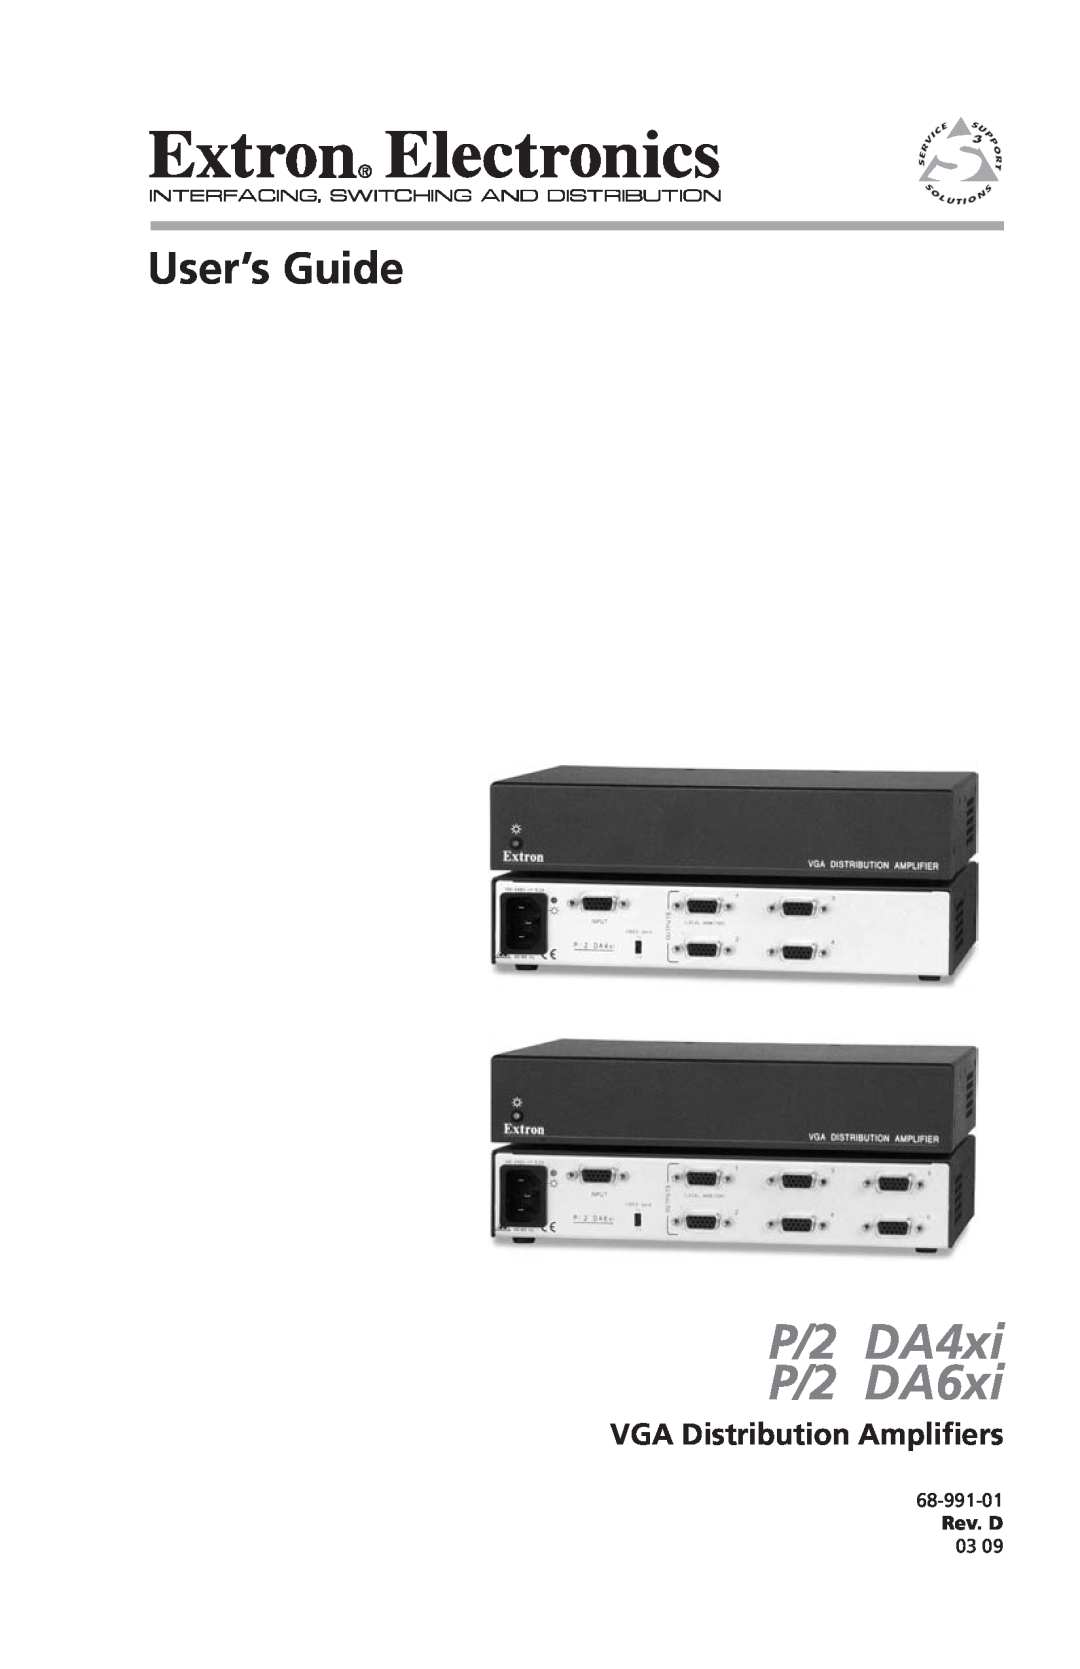 Extron electronic P/2 DA6XI manual VGA Distribution Amplifiers, P/2 DA4xi P/2 DA6xi, User’s Guide, 68-991-01, Rev. D 